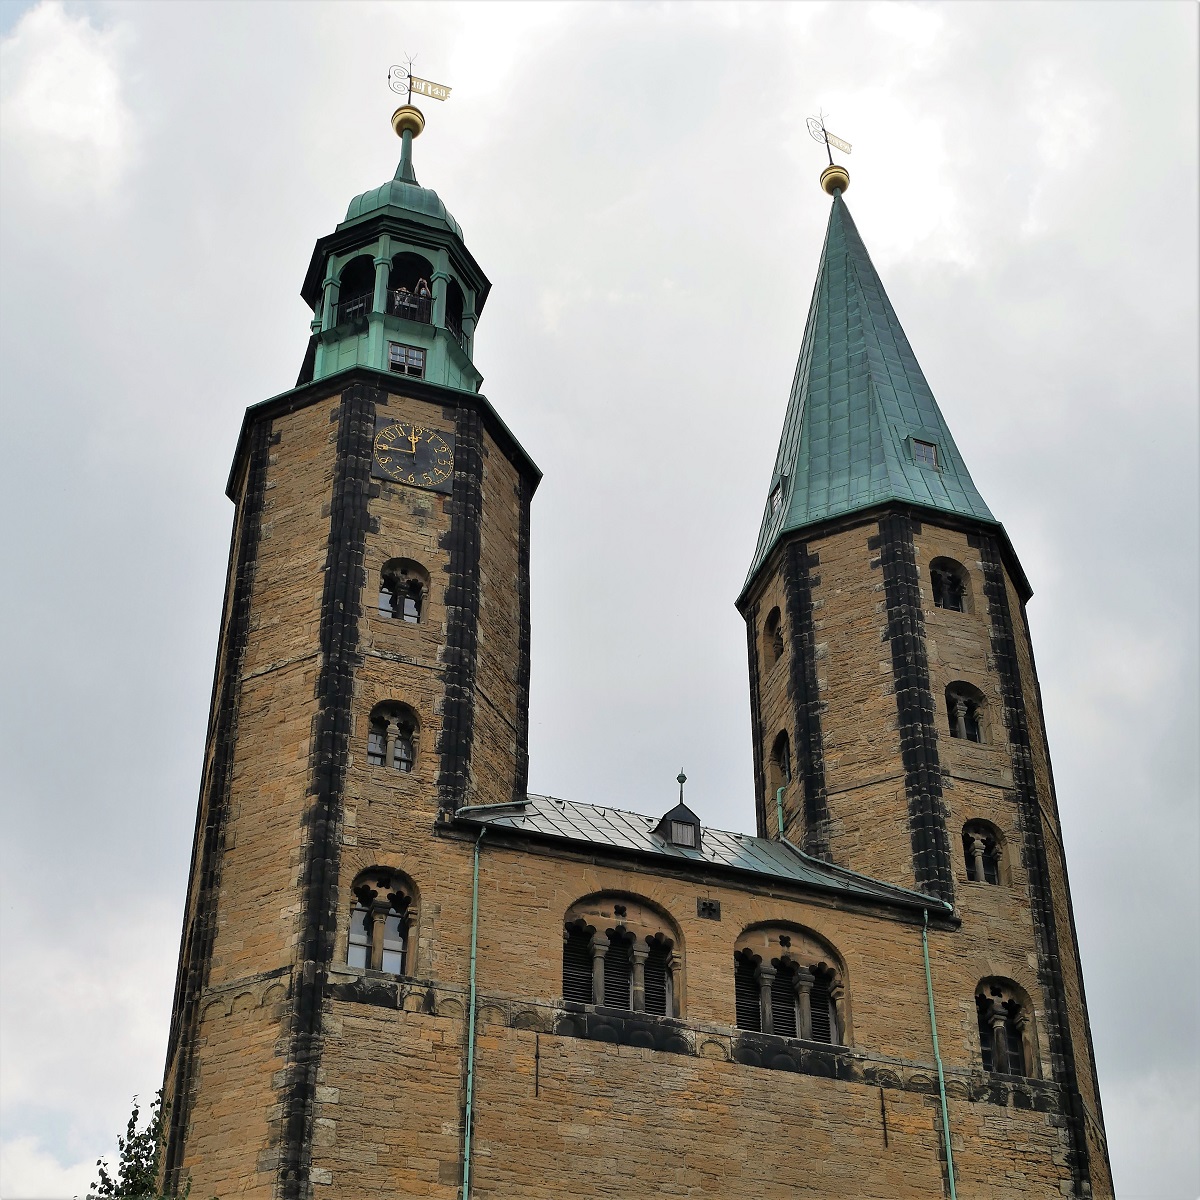 Turmbesteigung der Marktkirche